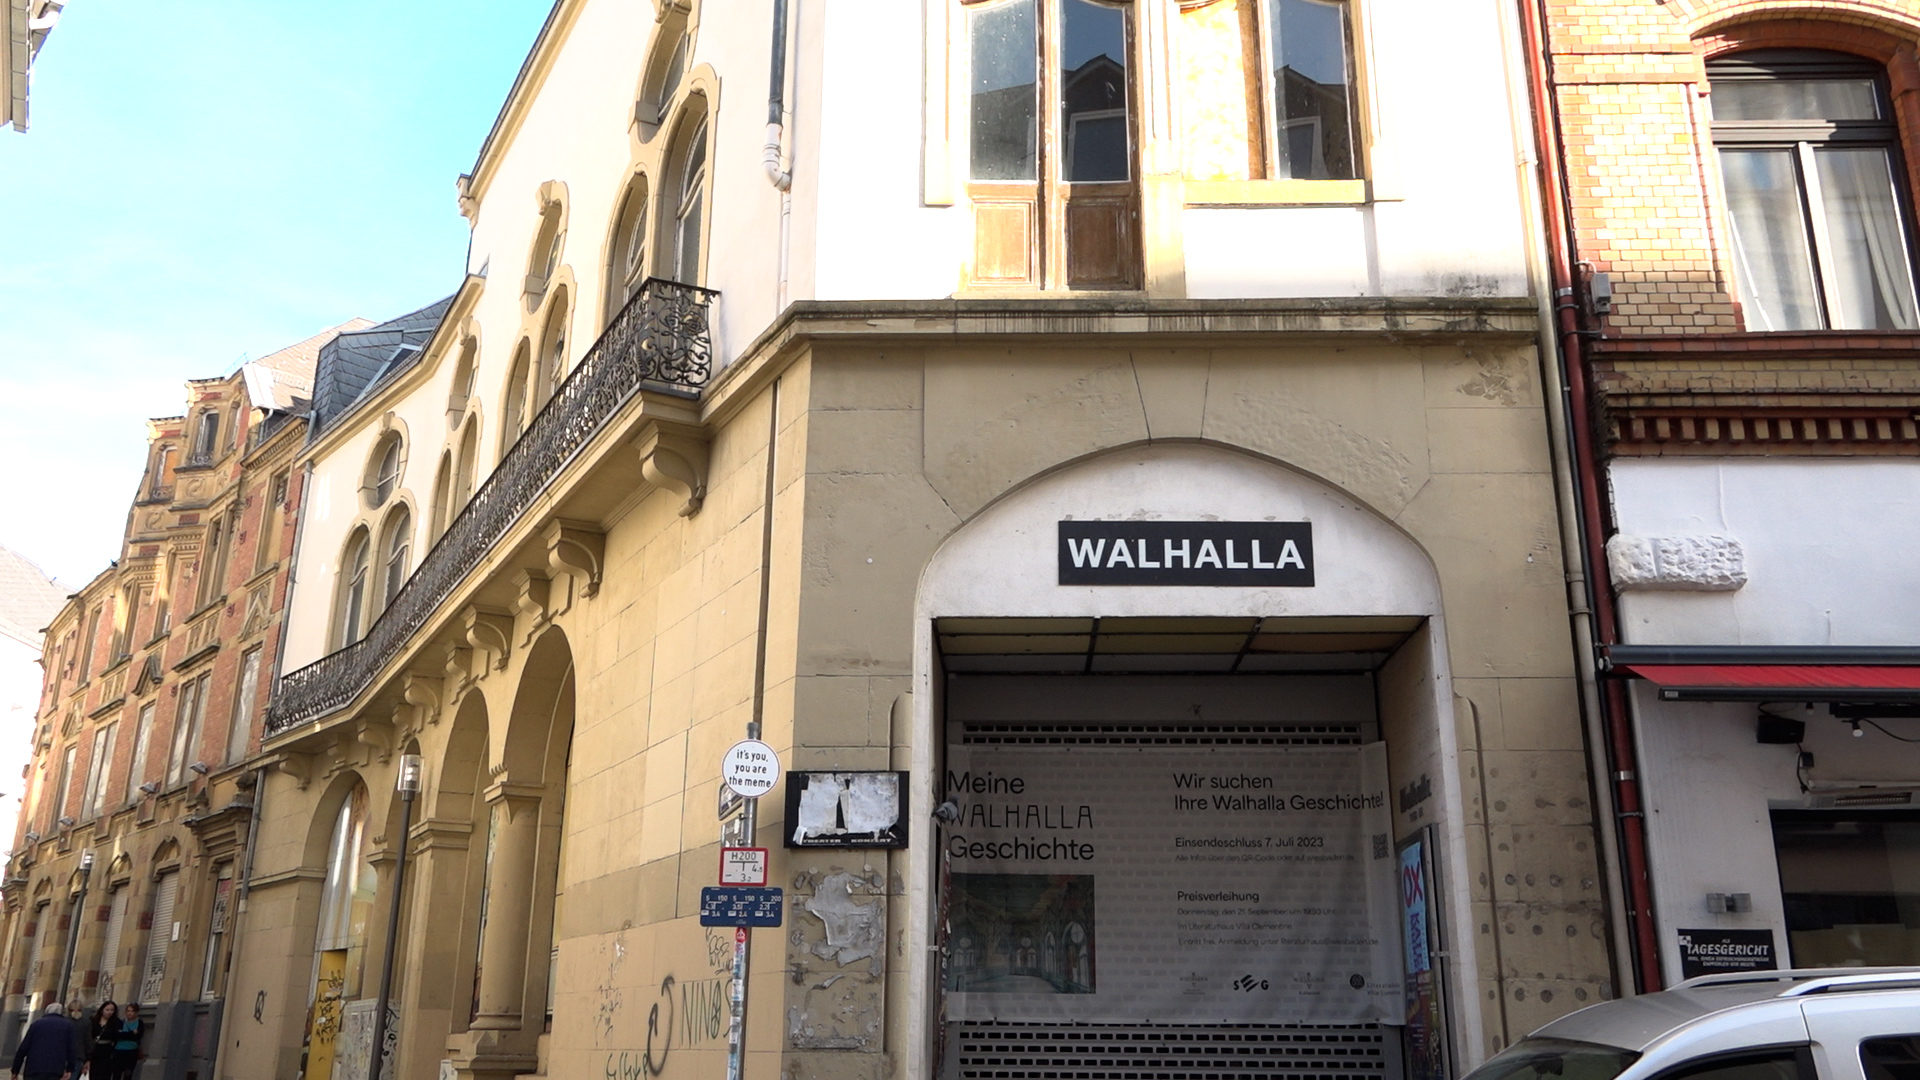 Walhalla Woche in Wiesbaden